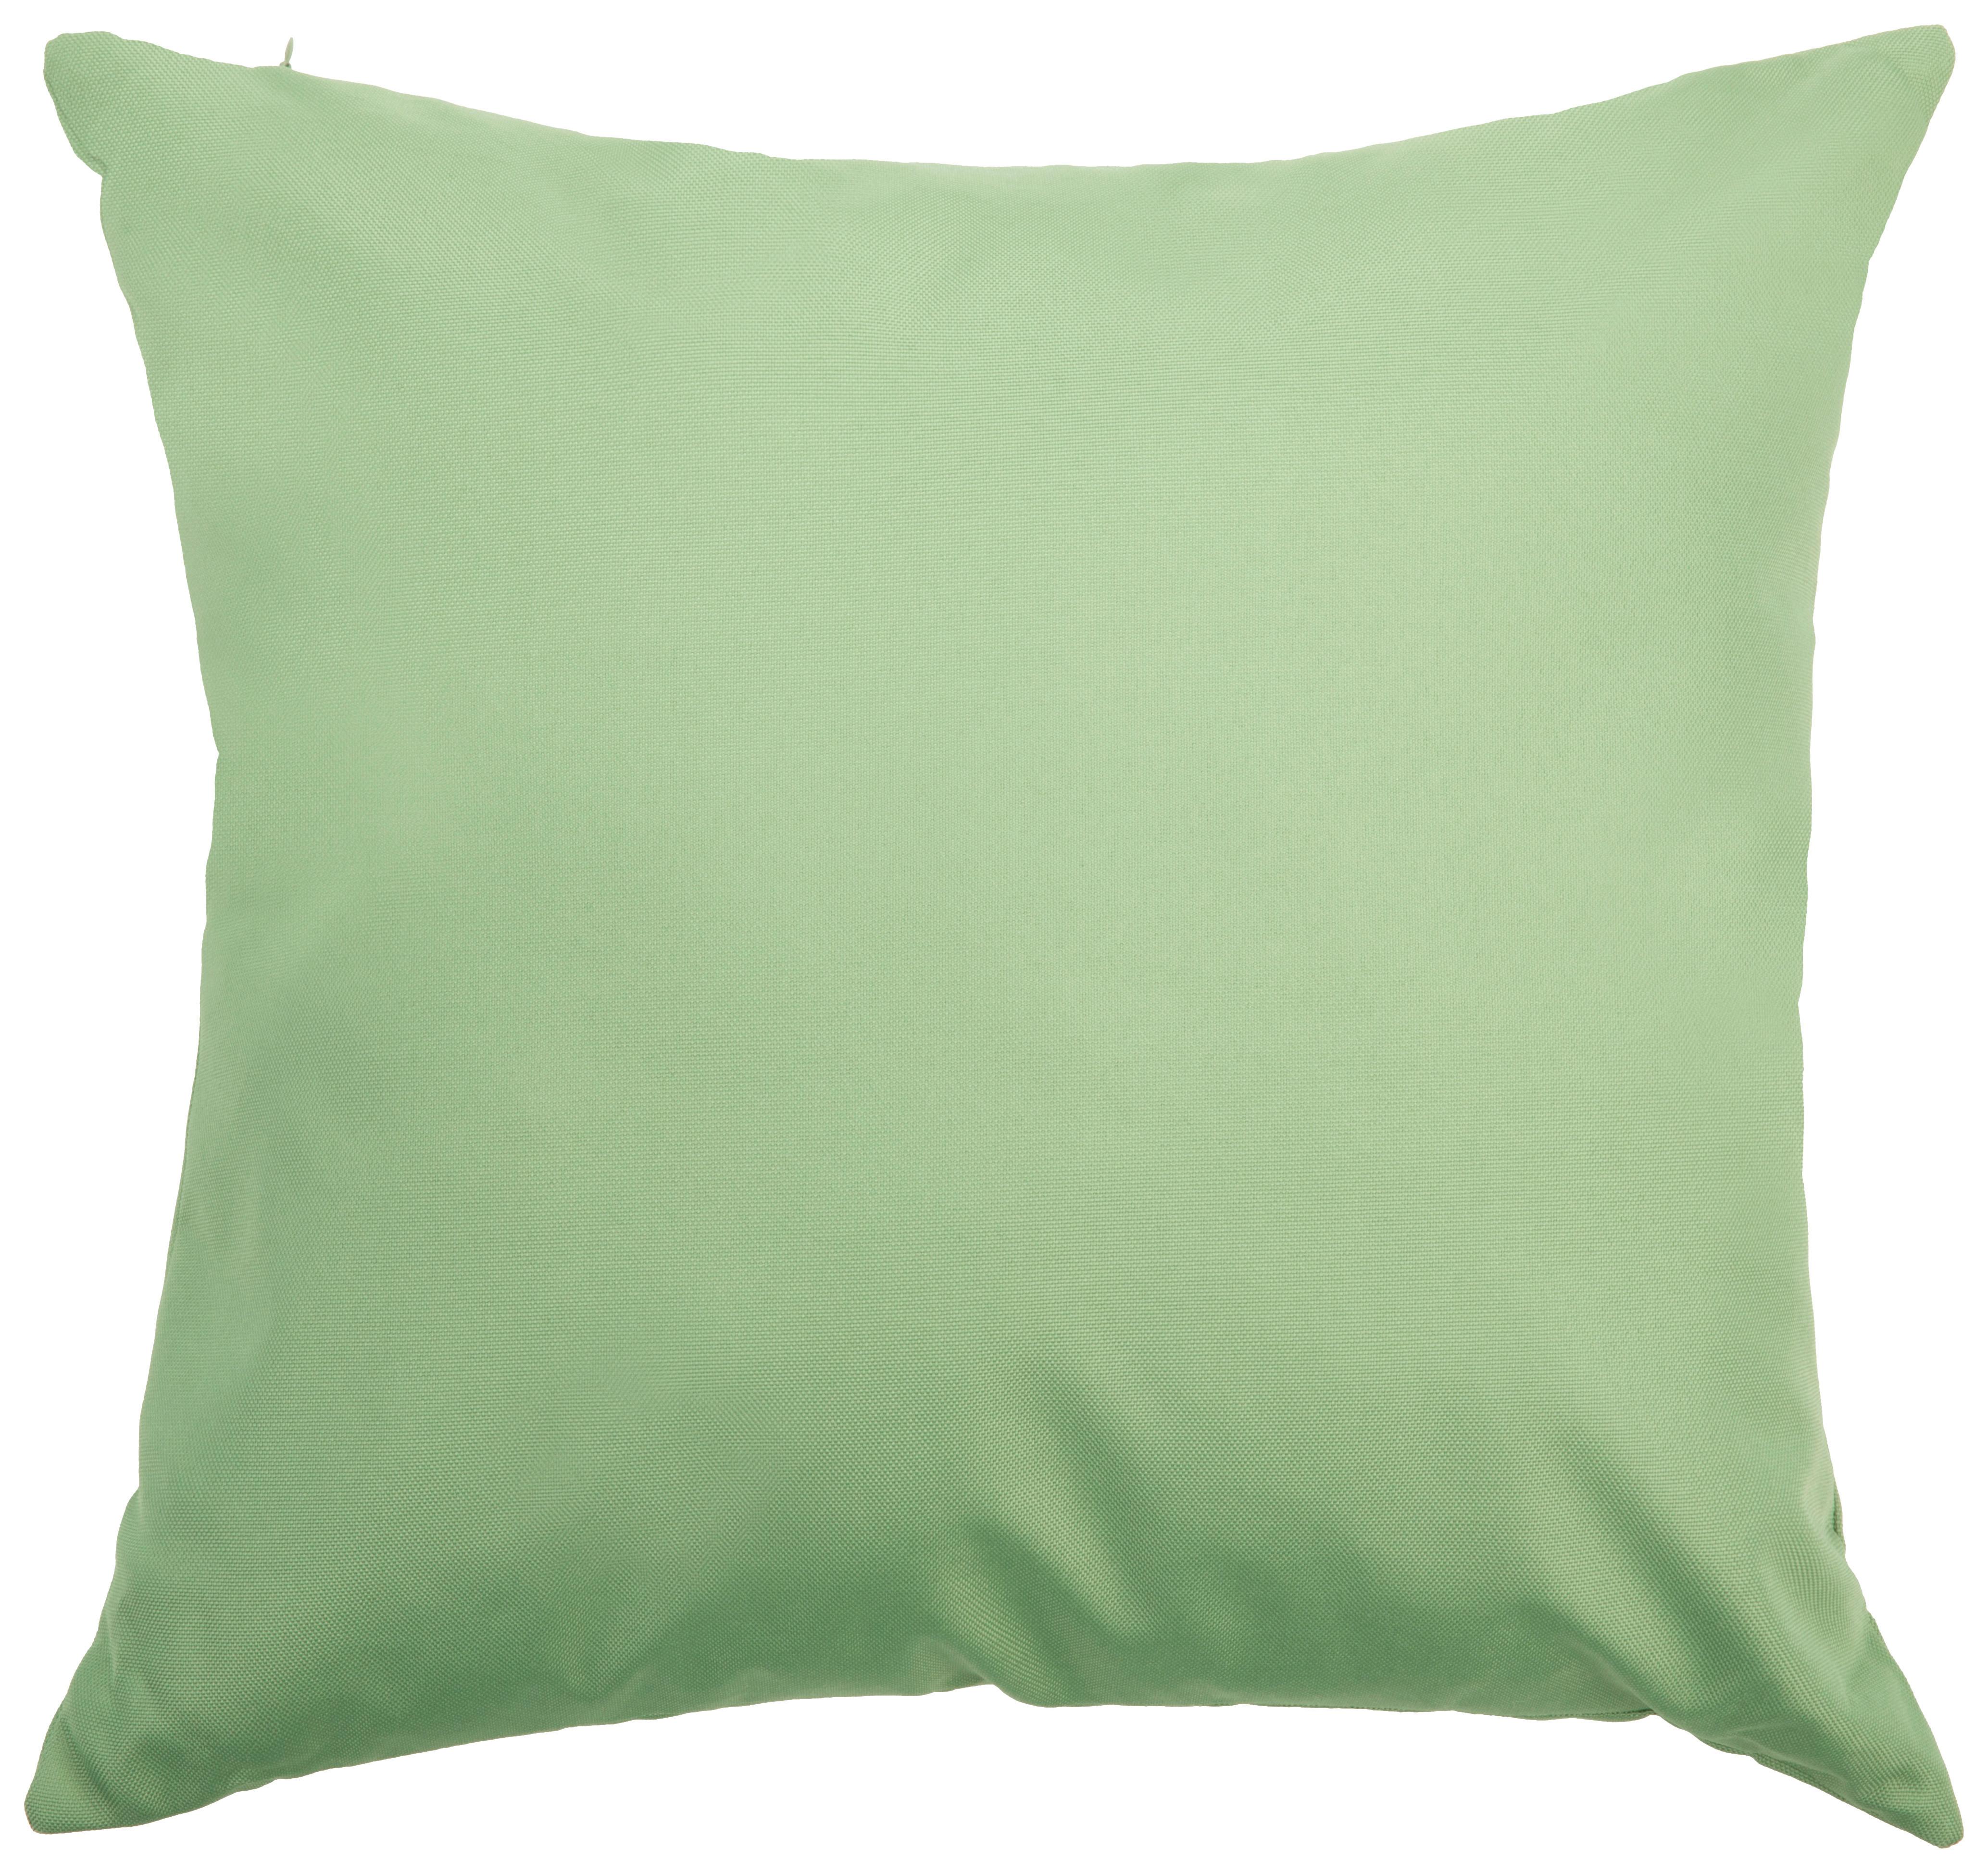 Vonkajší Vankúš Doris, 45/45cm, Zelená - zelená, Konvenčný, textil (45/45cm) - Modern Living